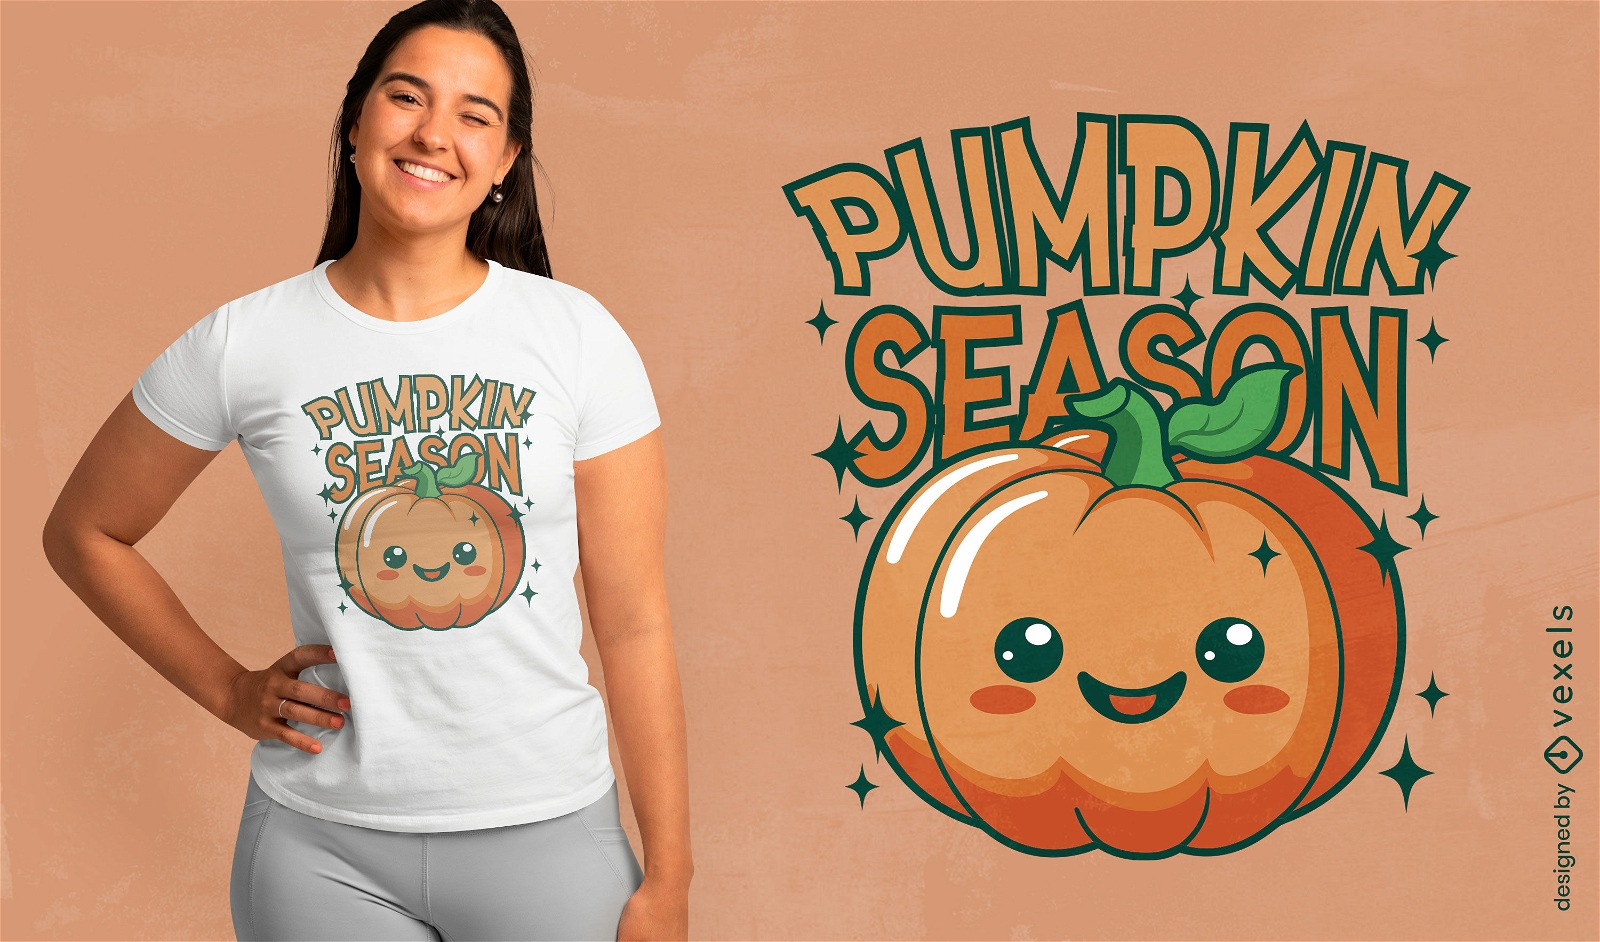 Pumpkin season cute t-shirt design